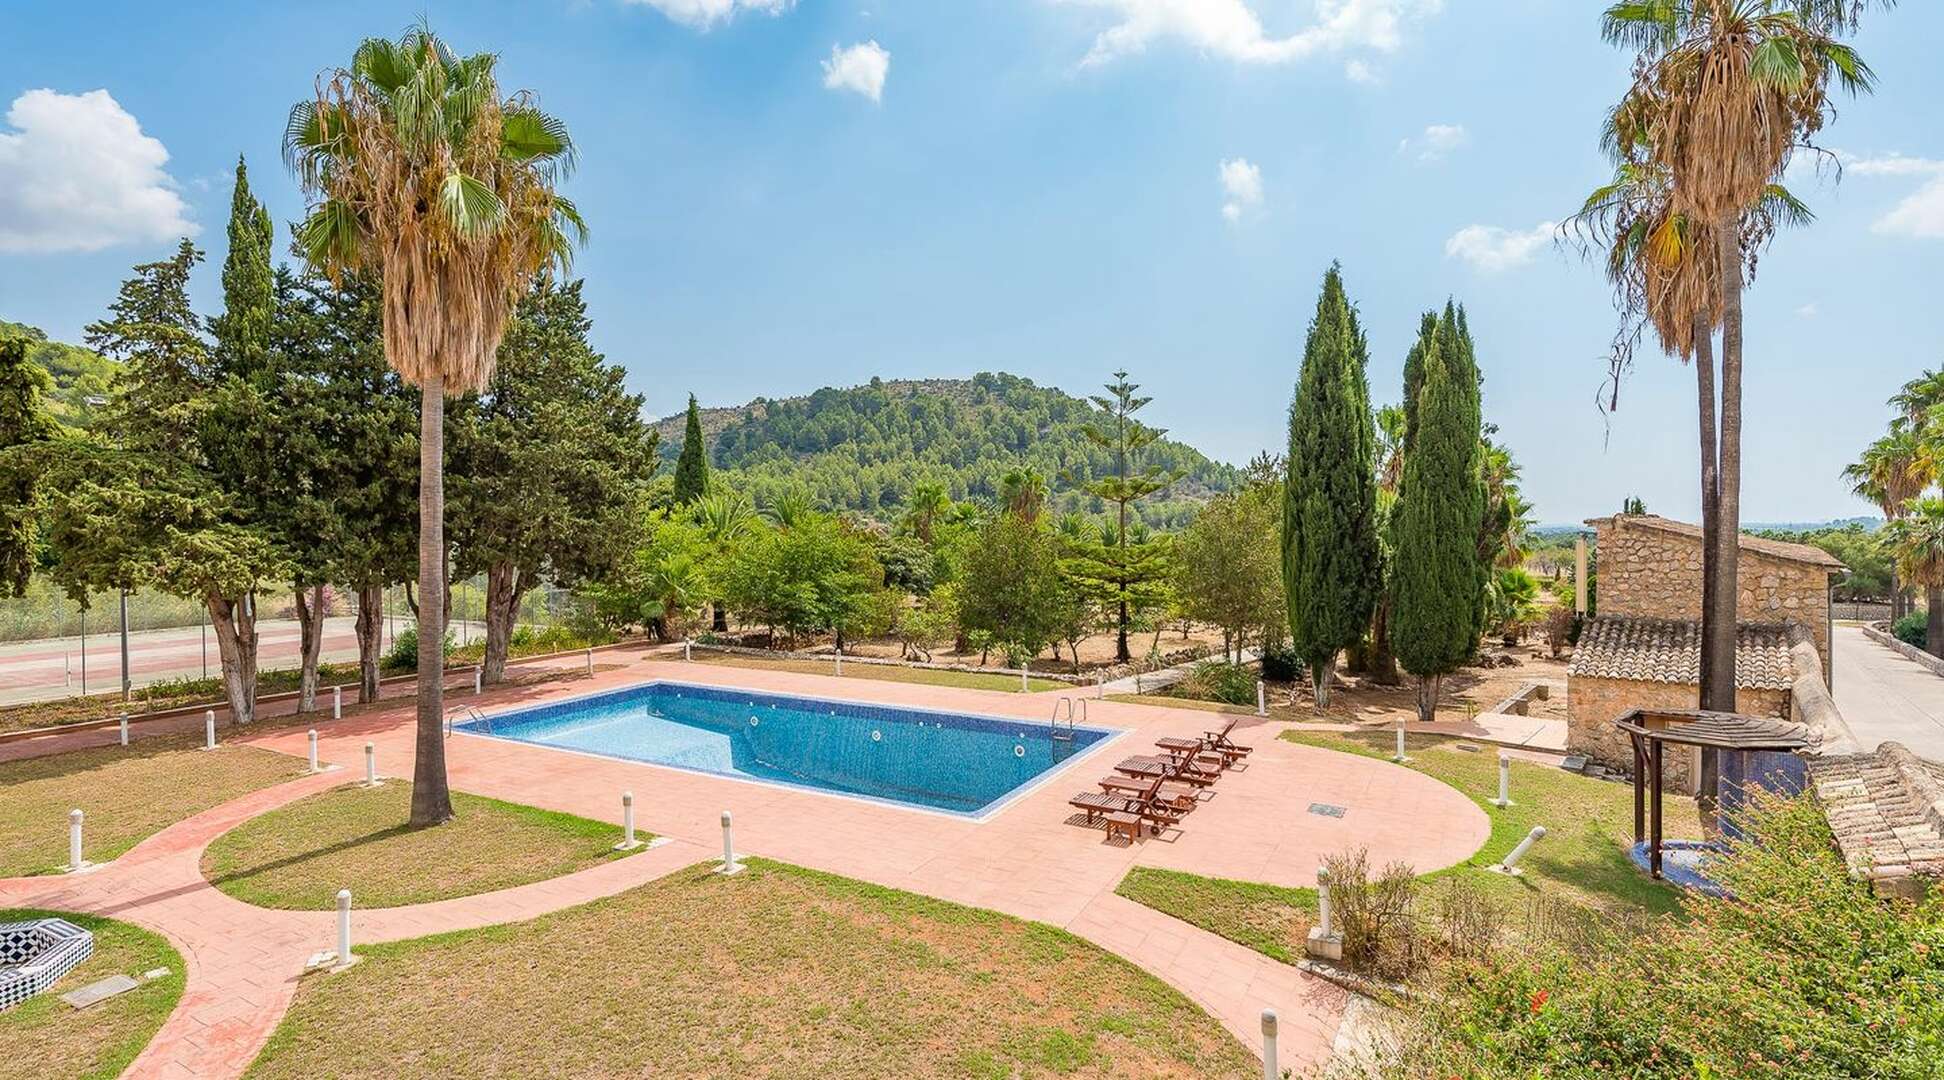 Casa senyorial amb 84 habitacions, piscina i parc a prop de Valldemossa